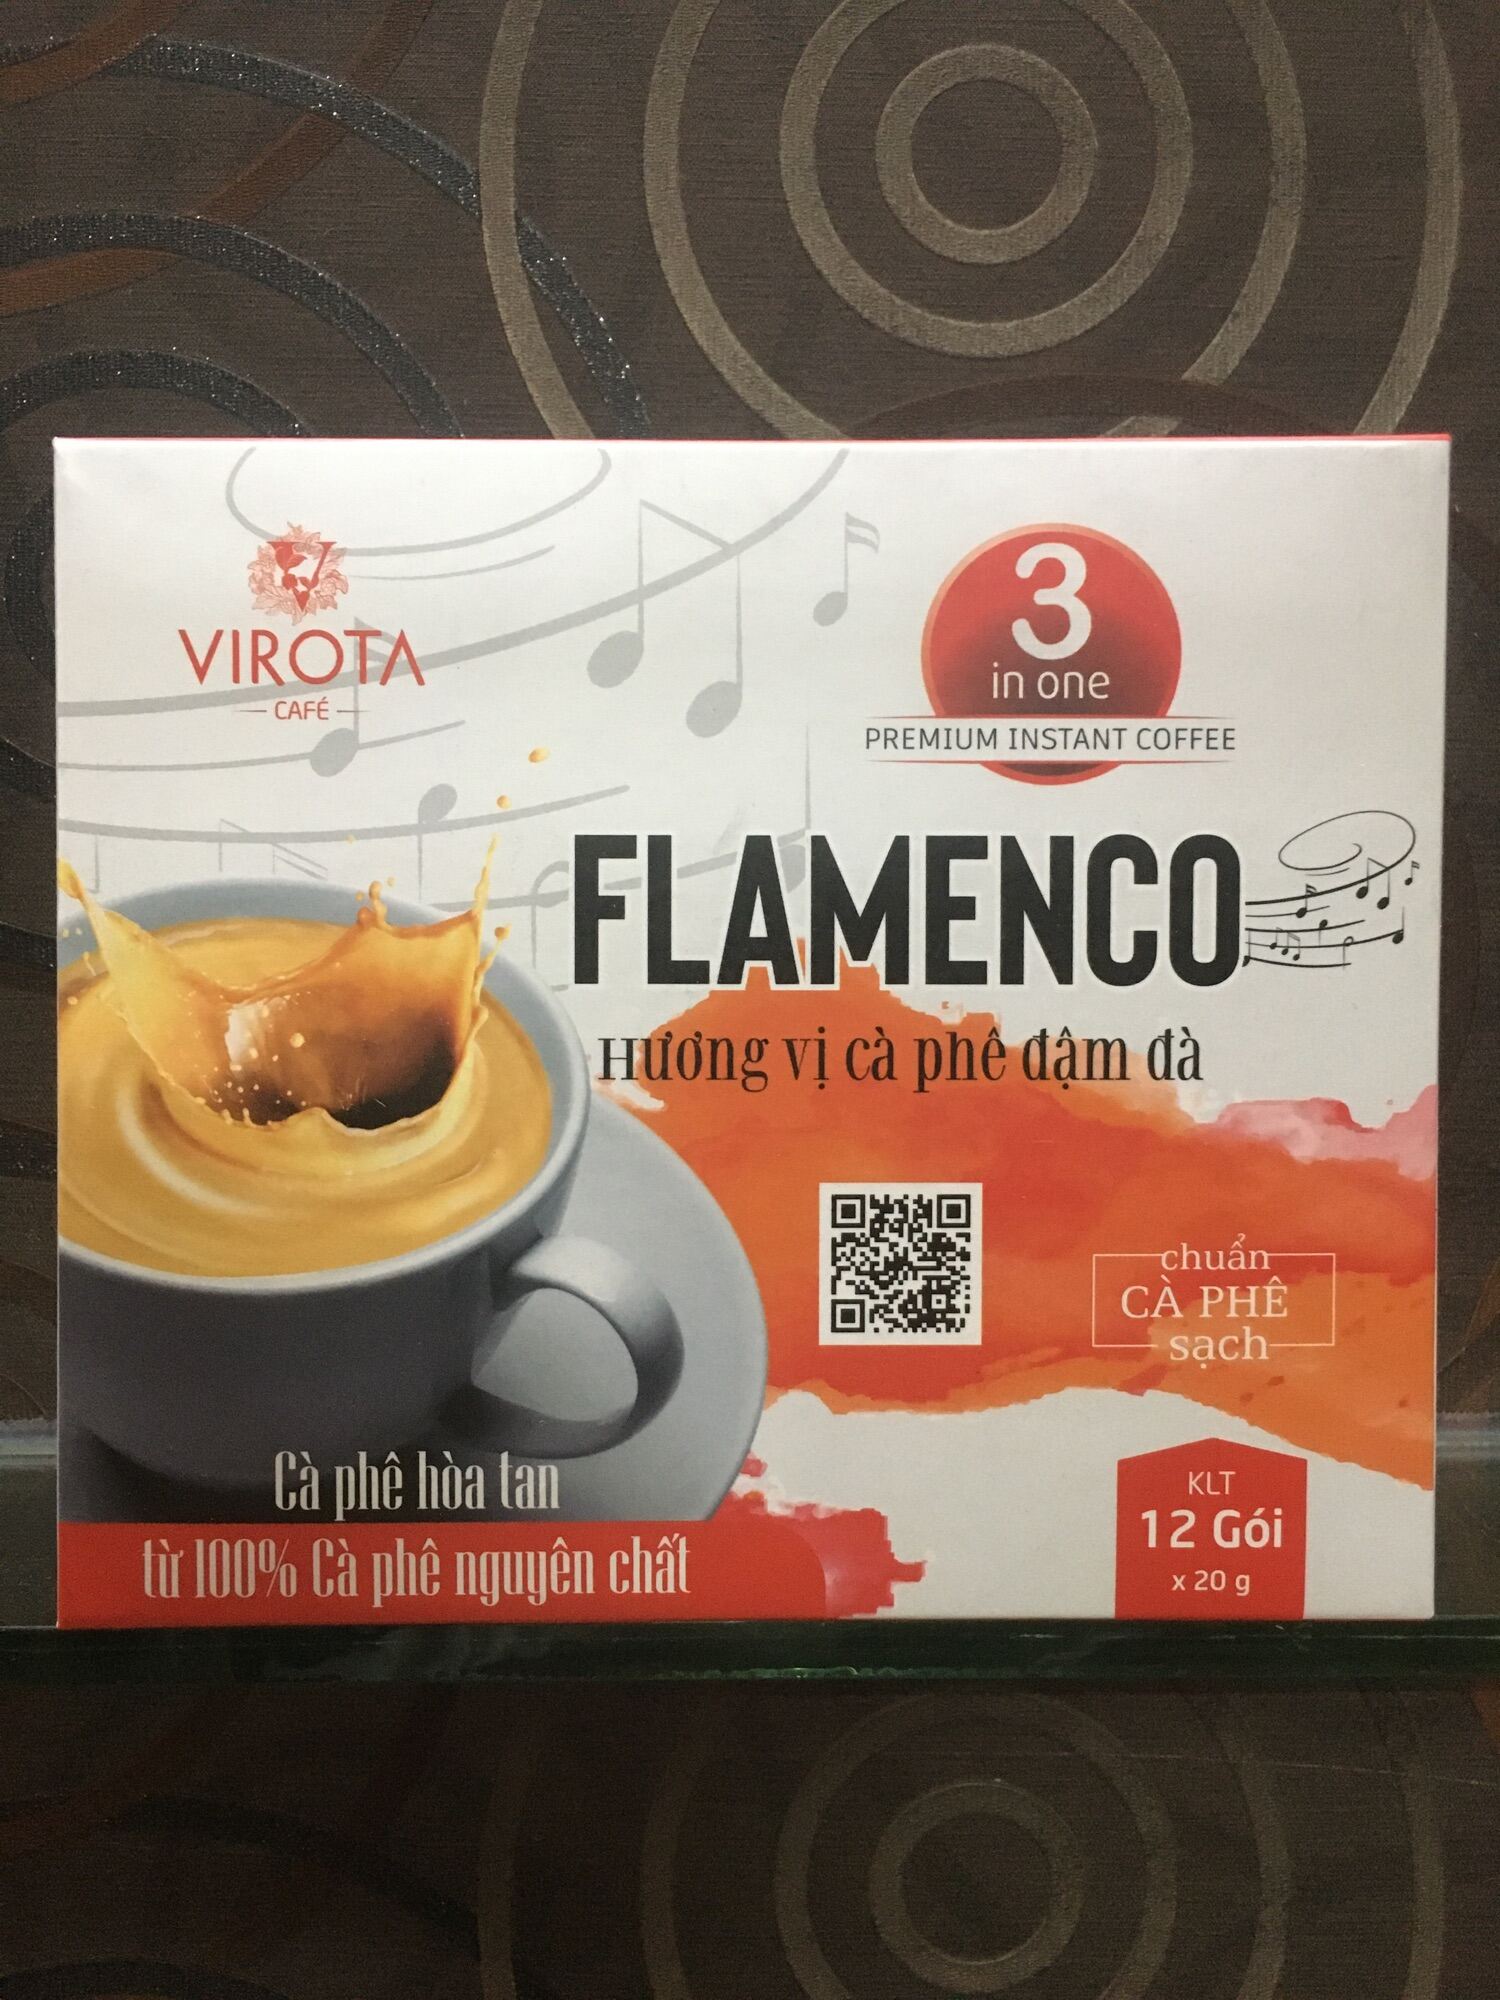 Cafe hoà tan từ 100% cafe nguyên chất hương vị cafe đậm đà flamengo của - ảnh sản phẩm 1